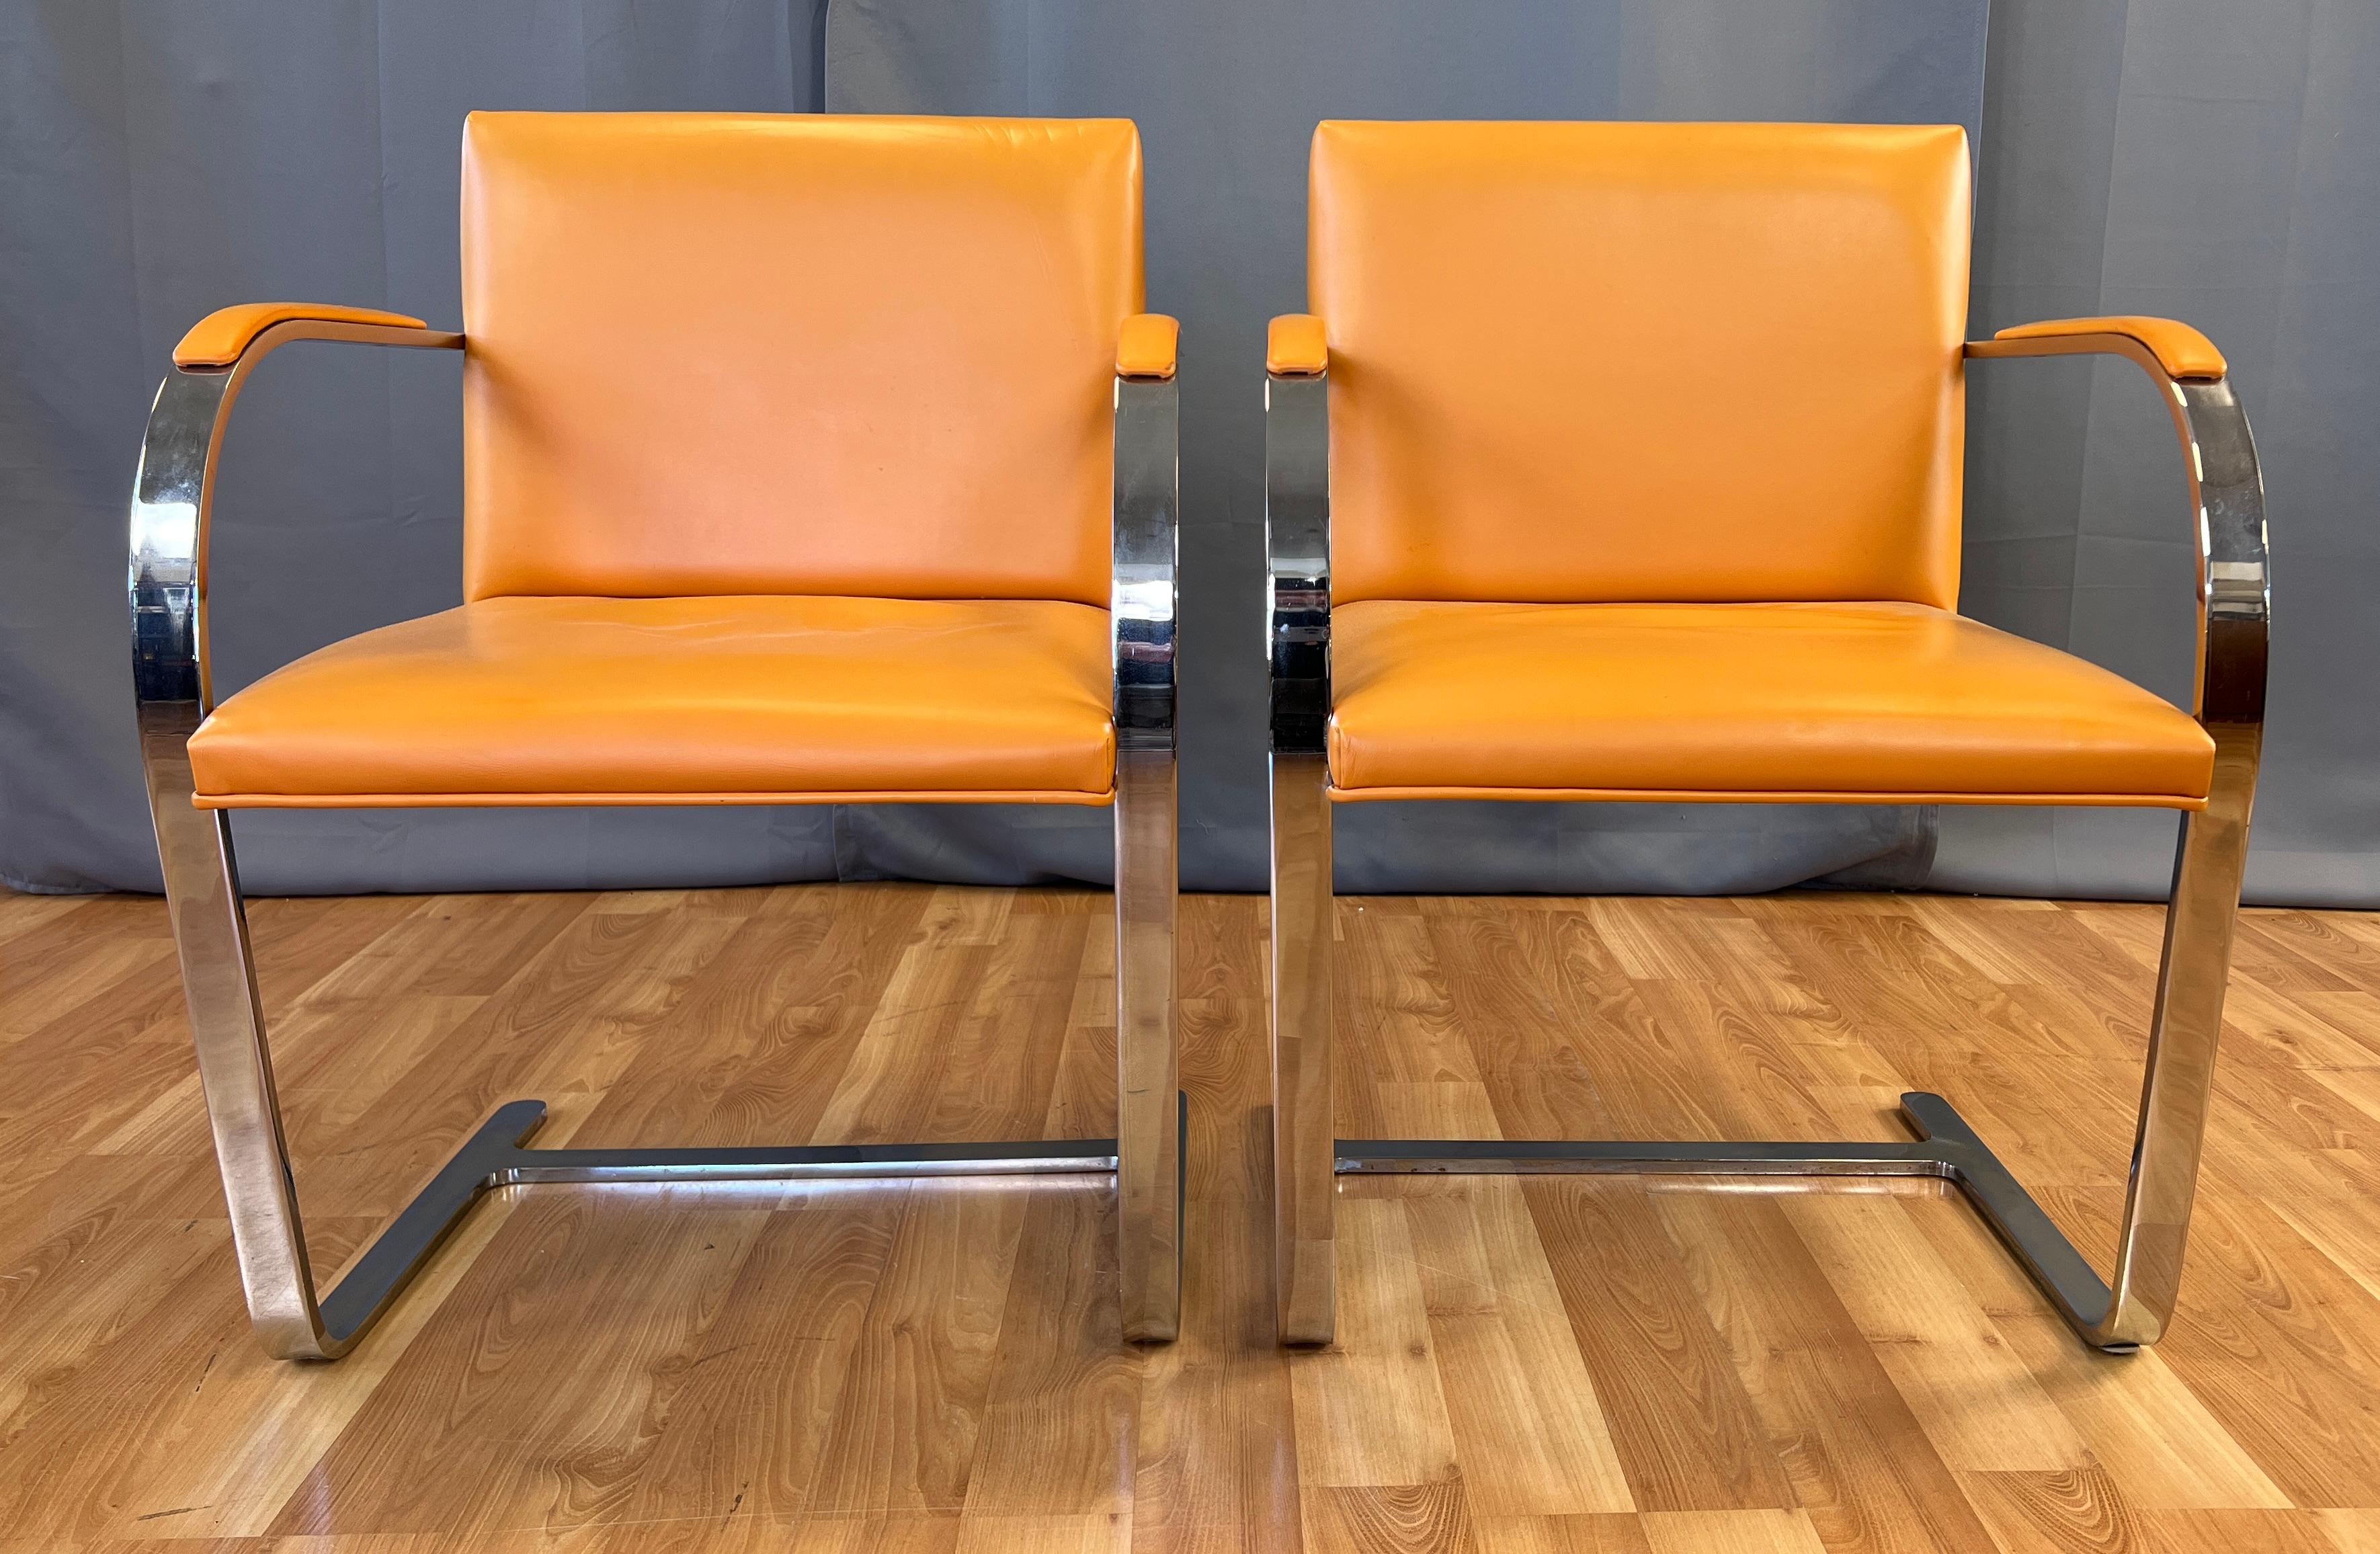 Zwei wunderbare Flachstangensessel Brno aus den 1970er Jahren in orangefarbenem Leder, entworfen von Mies Van der Rohe.  
Hergestellt von Gordon International, in Argentinien. 
Die Stühle haben ein klassisches Design und setzen mit ihrem